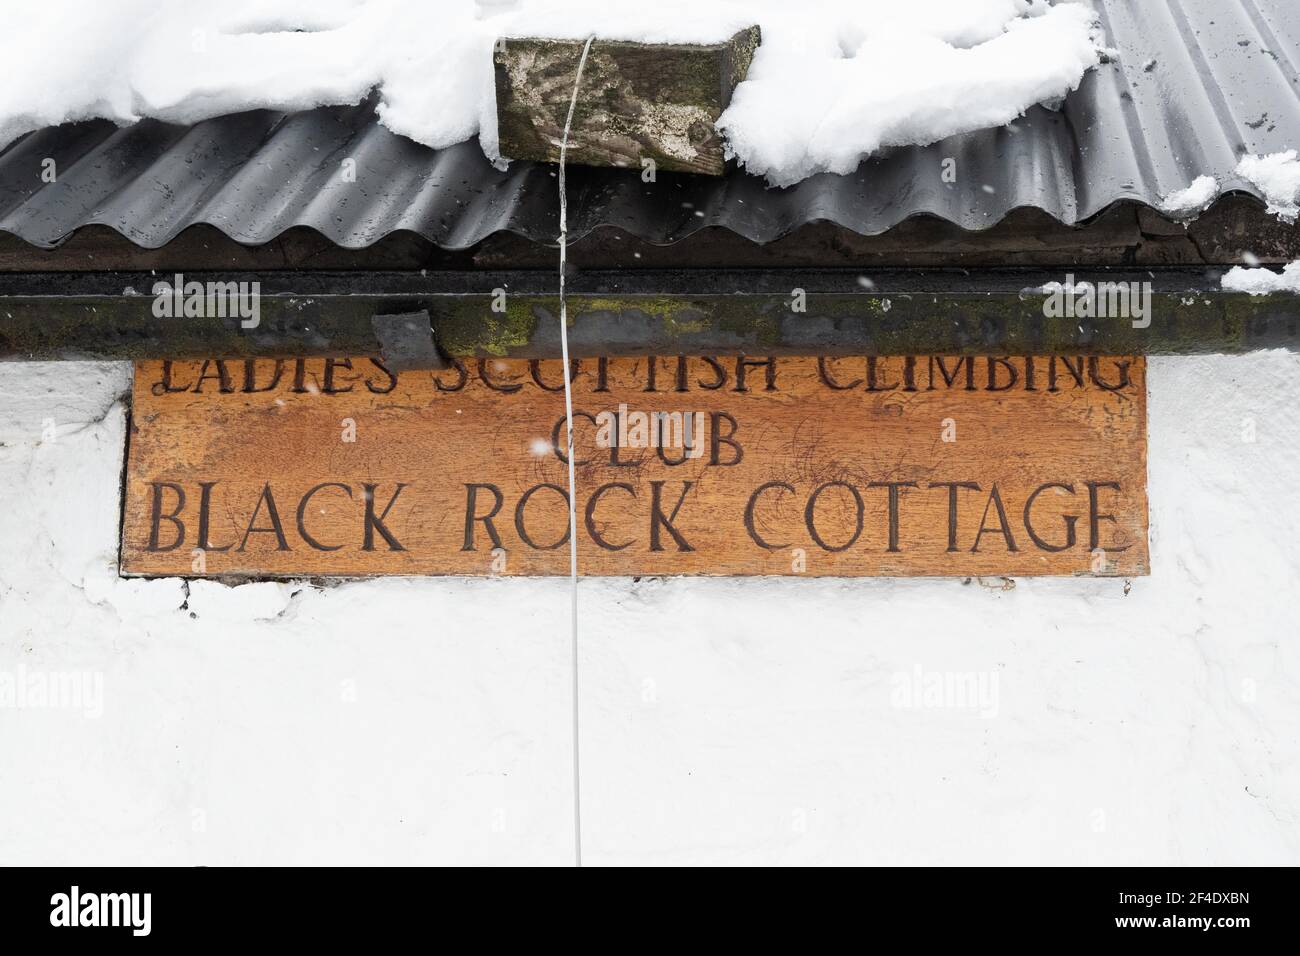 Black Rock Cottage - Ladies Scottish Climbing Club Sign - Glen COE, Écosse, Royaume-Uni Banque D'Images